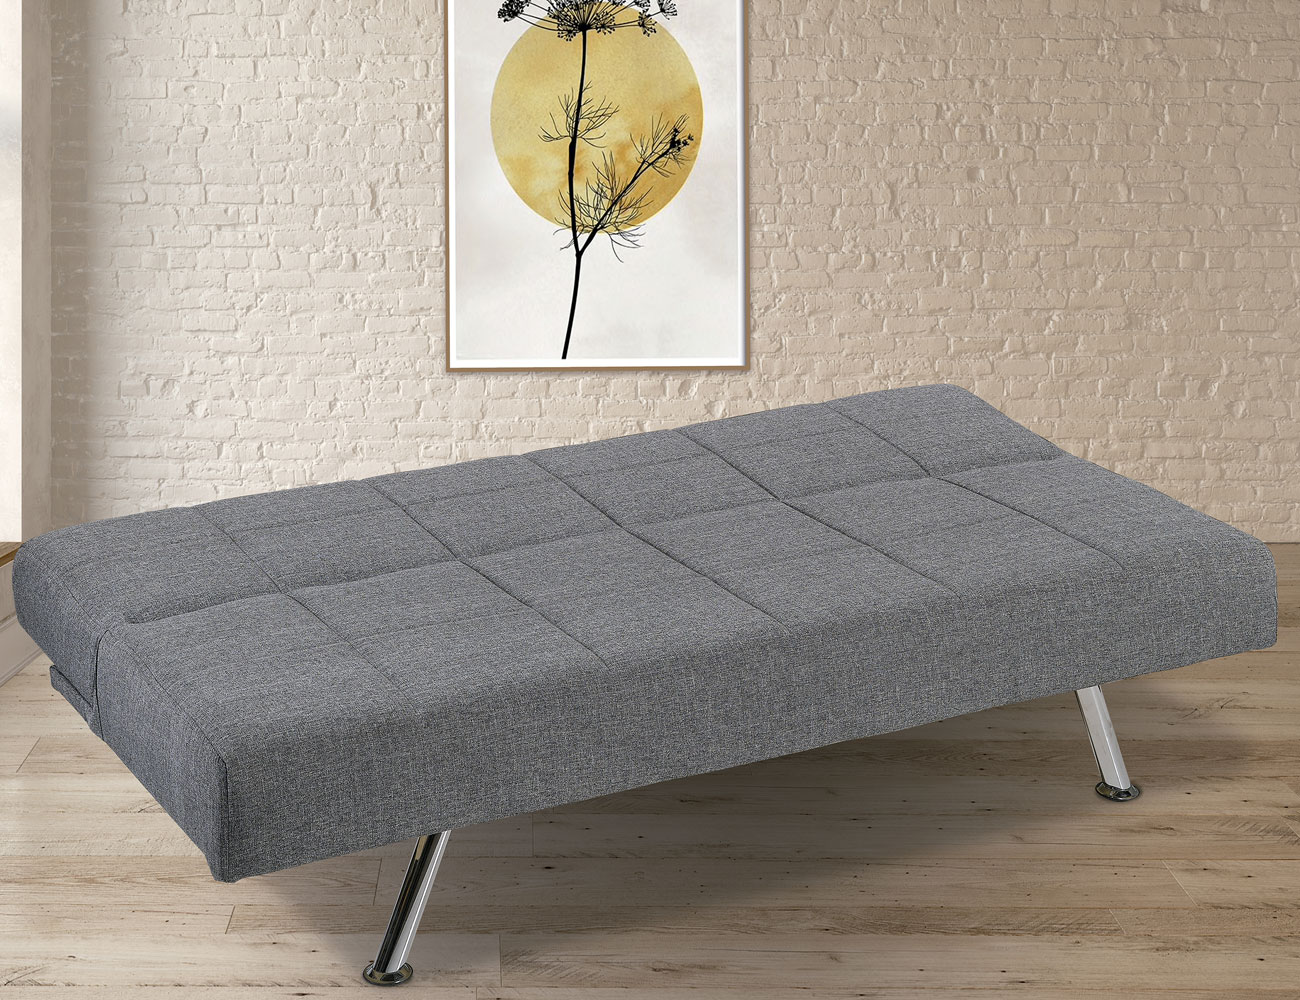 Sofa cama clicl clac gris